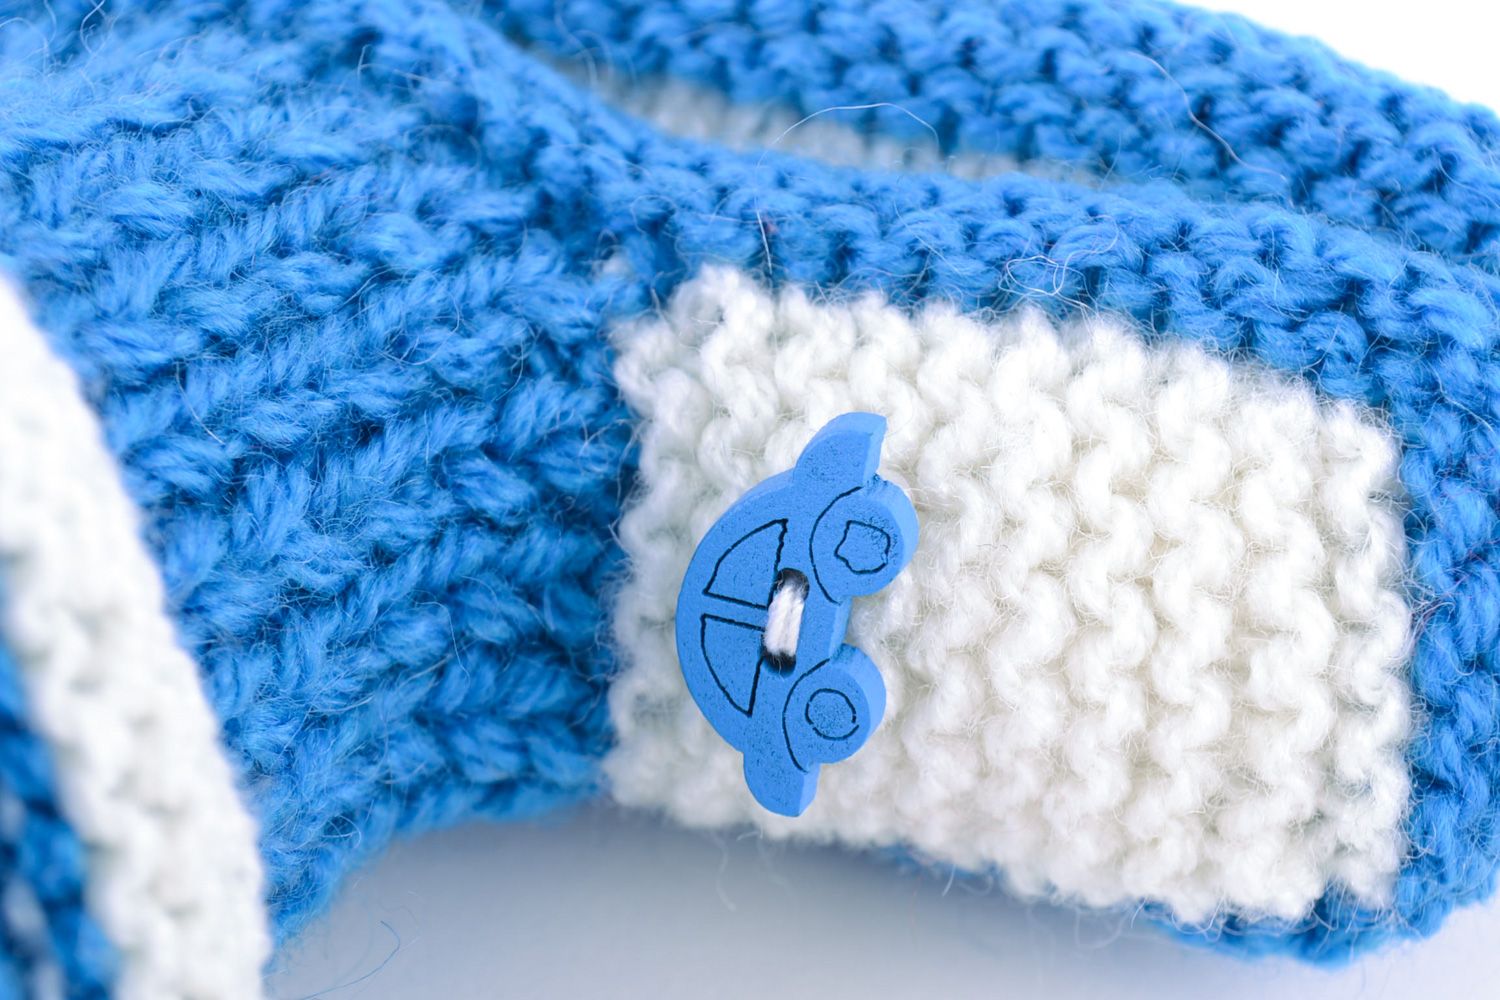 Пинетки для младенцев ручной вязки из натуральной шерсти теплые и красивые белые с голубым фото 4